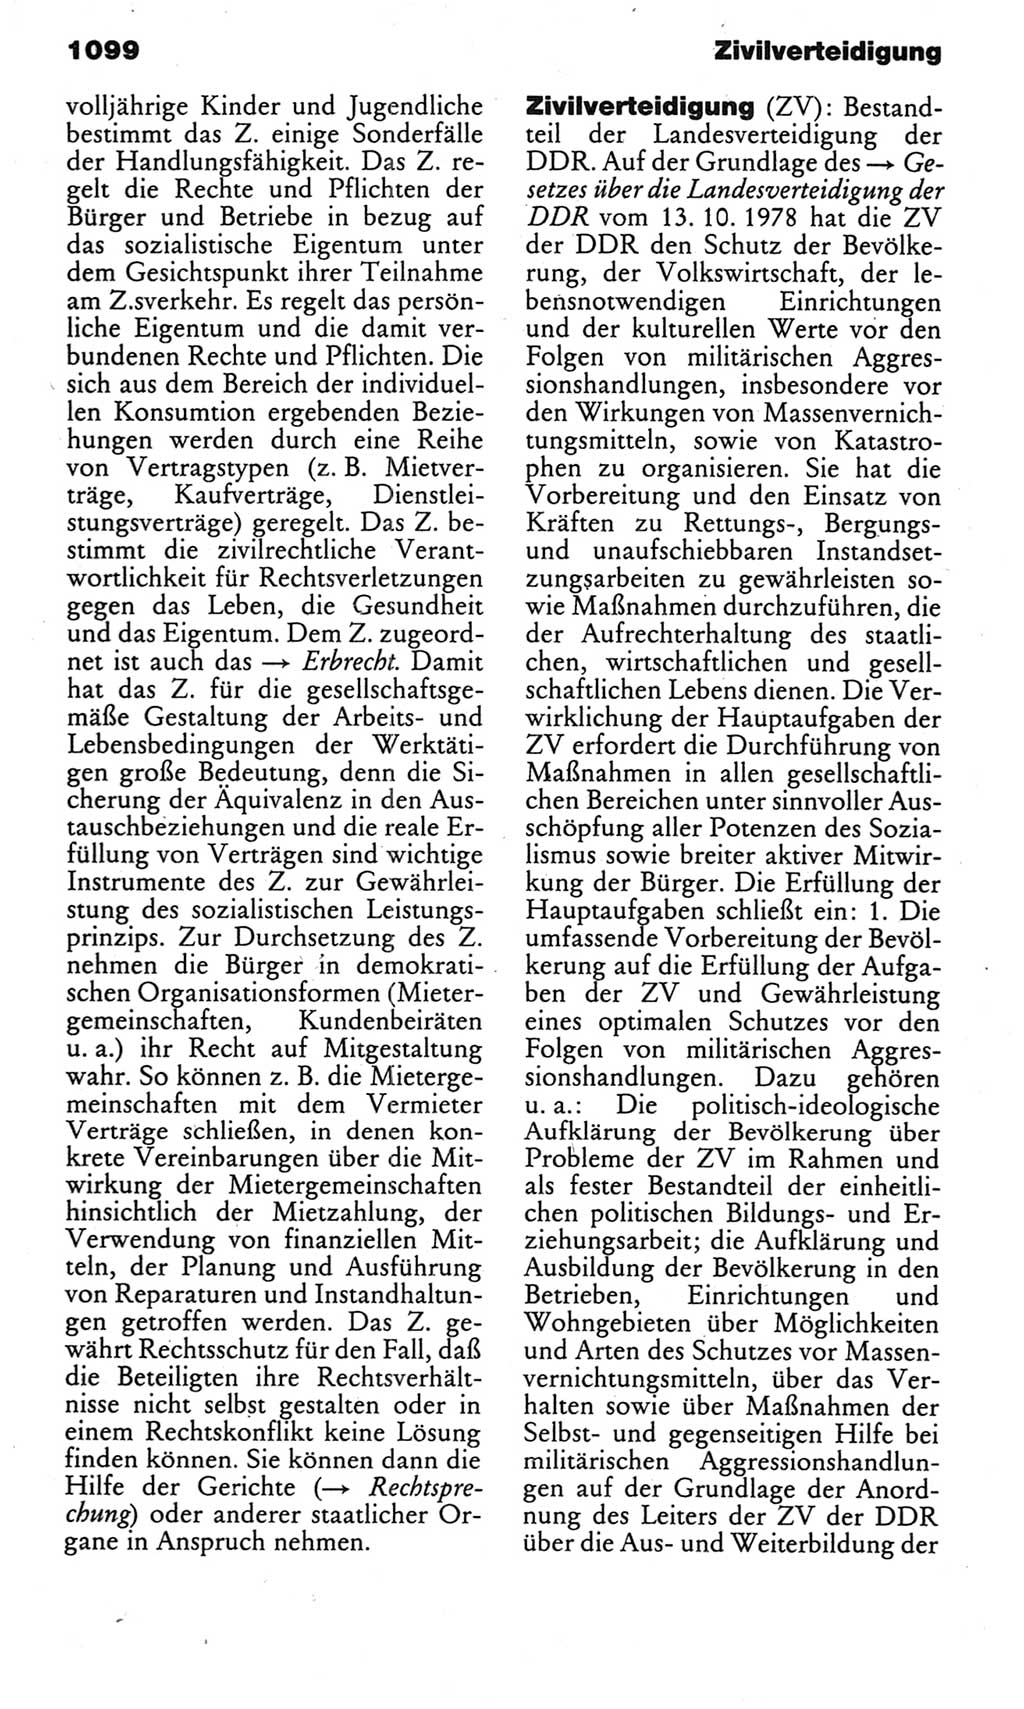 Kleines politisches Wörterbuch [Deutsche Demokratische Republik (DDR)] 1983, Seite 1099 (Kl. pol. Wb. DDR 1983, S. 1099)